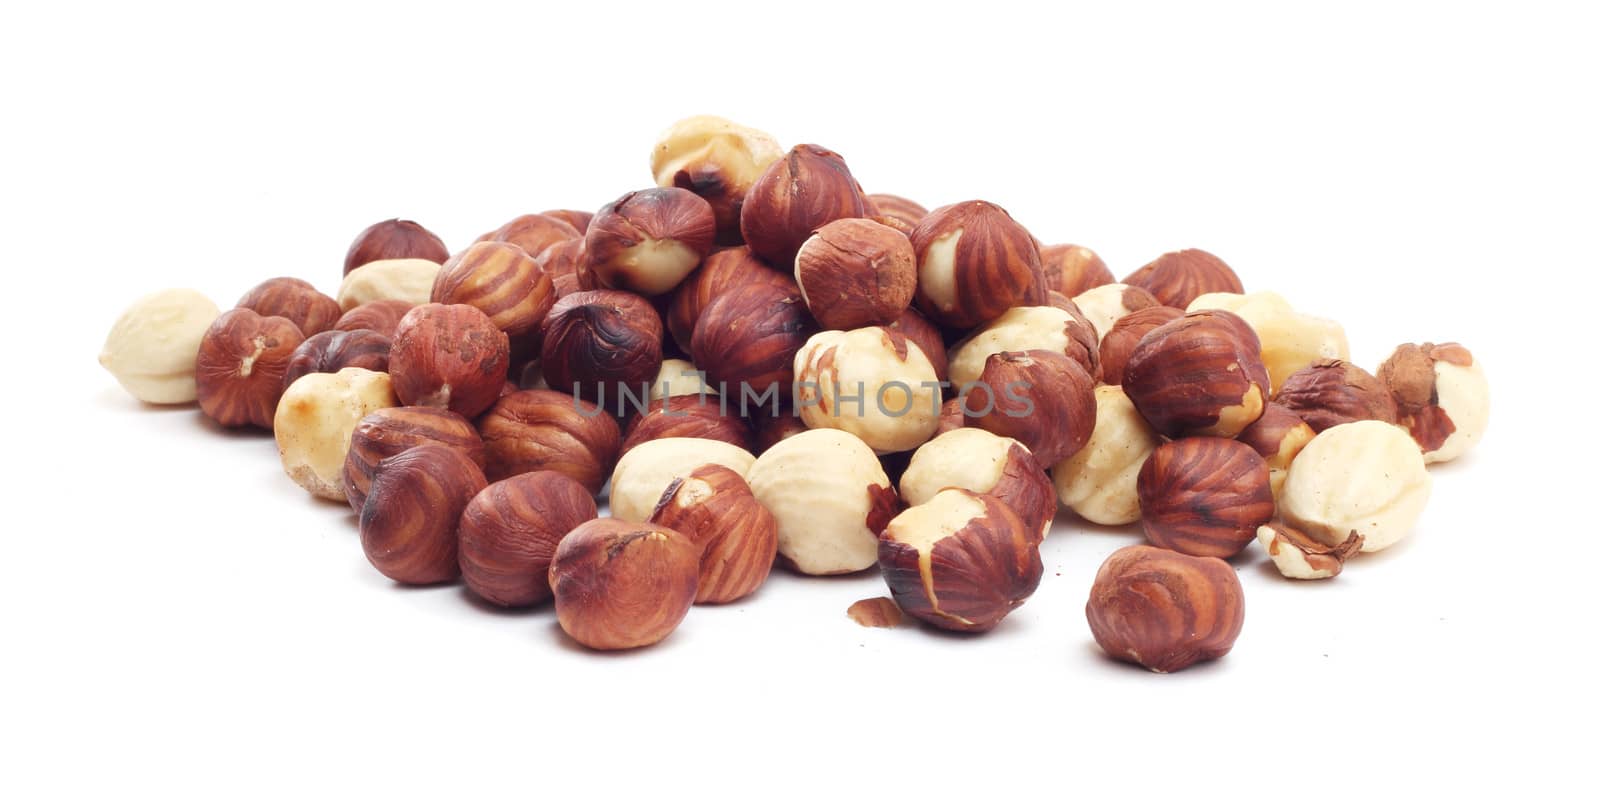 Hazelnuts by destillat